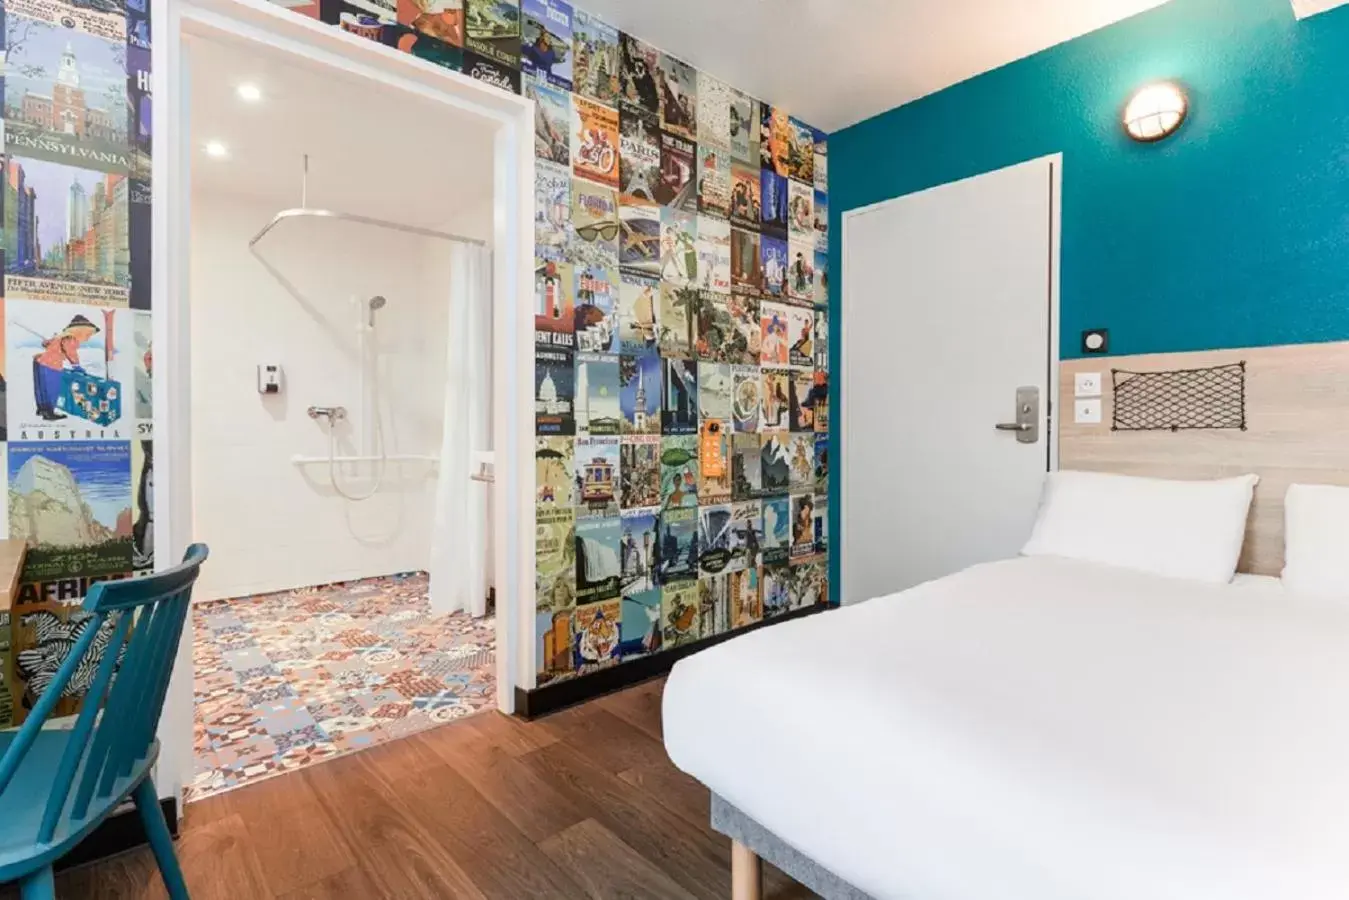 Bed in hotelF1 Fréjus Roquebrune sur Argens